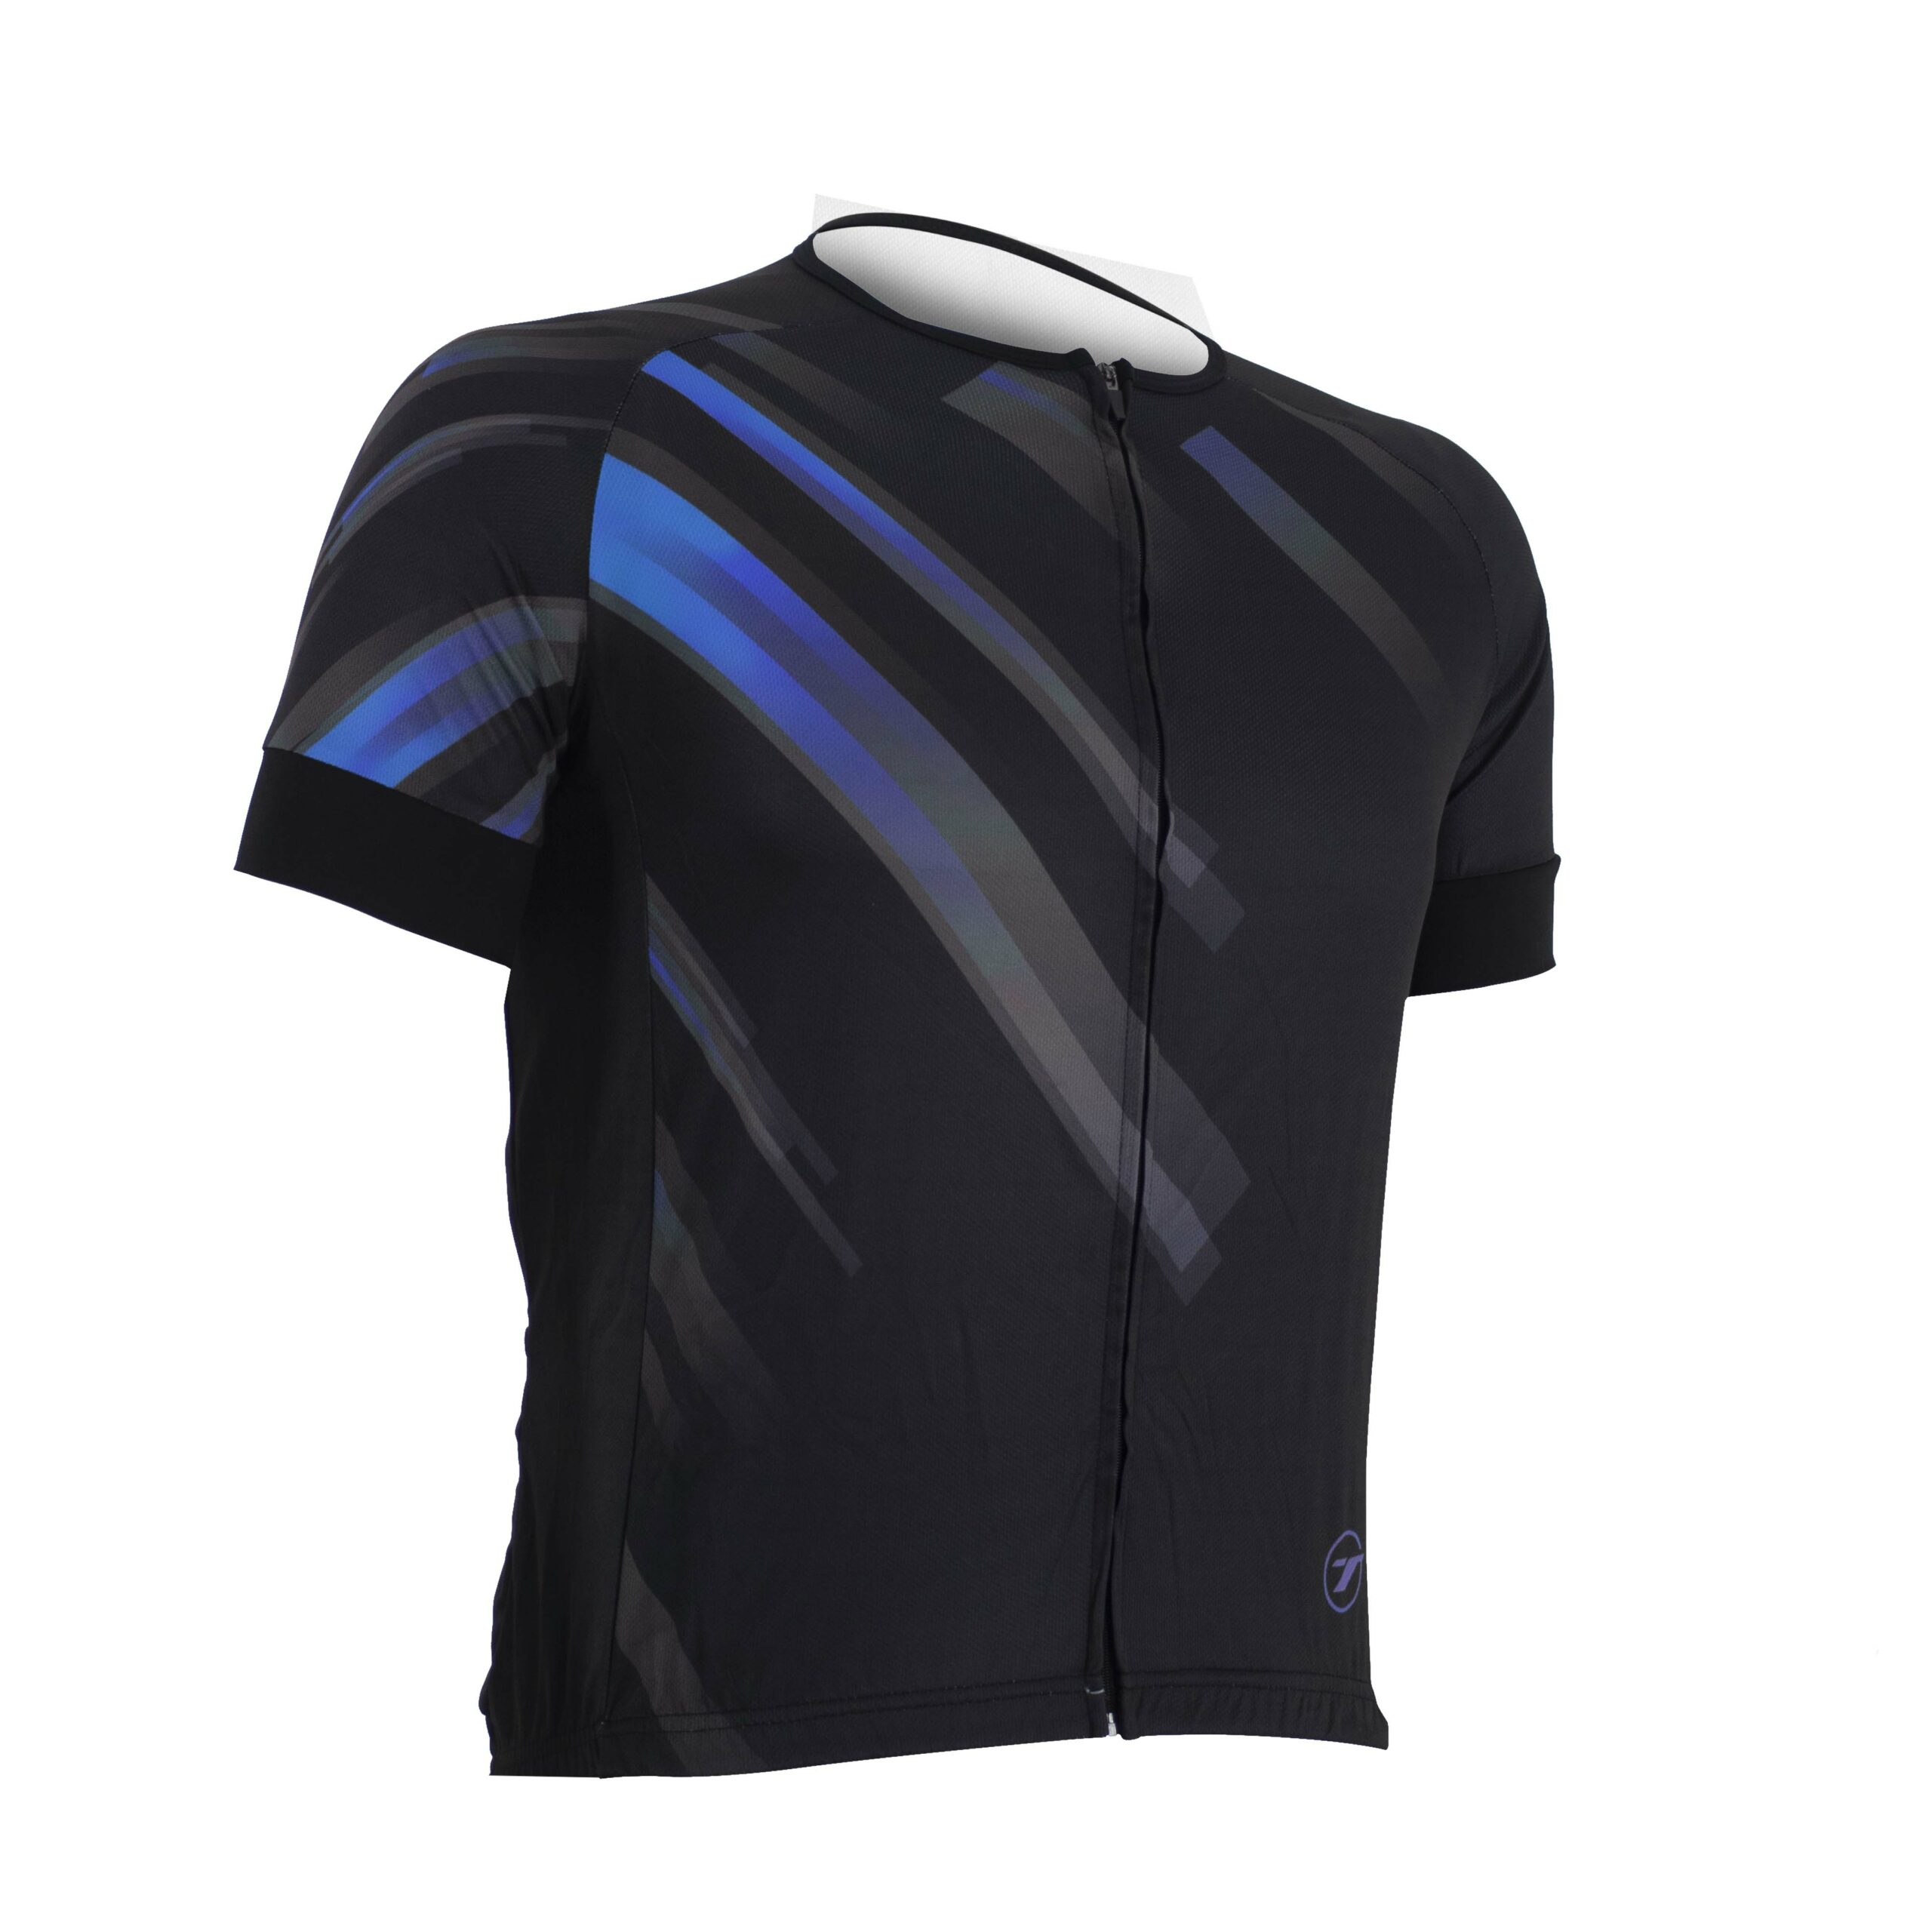 Camisa para ciclismo SUNNY | RIDE LINE - Preto/Azul, M